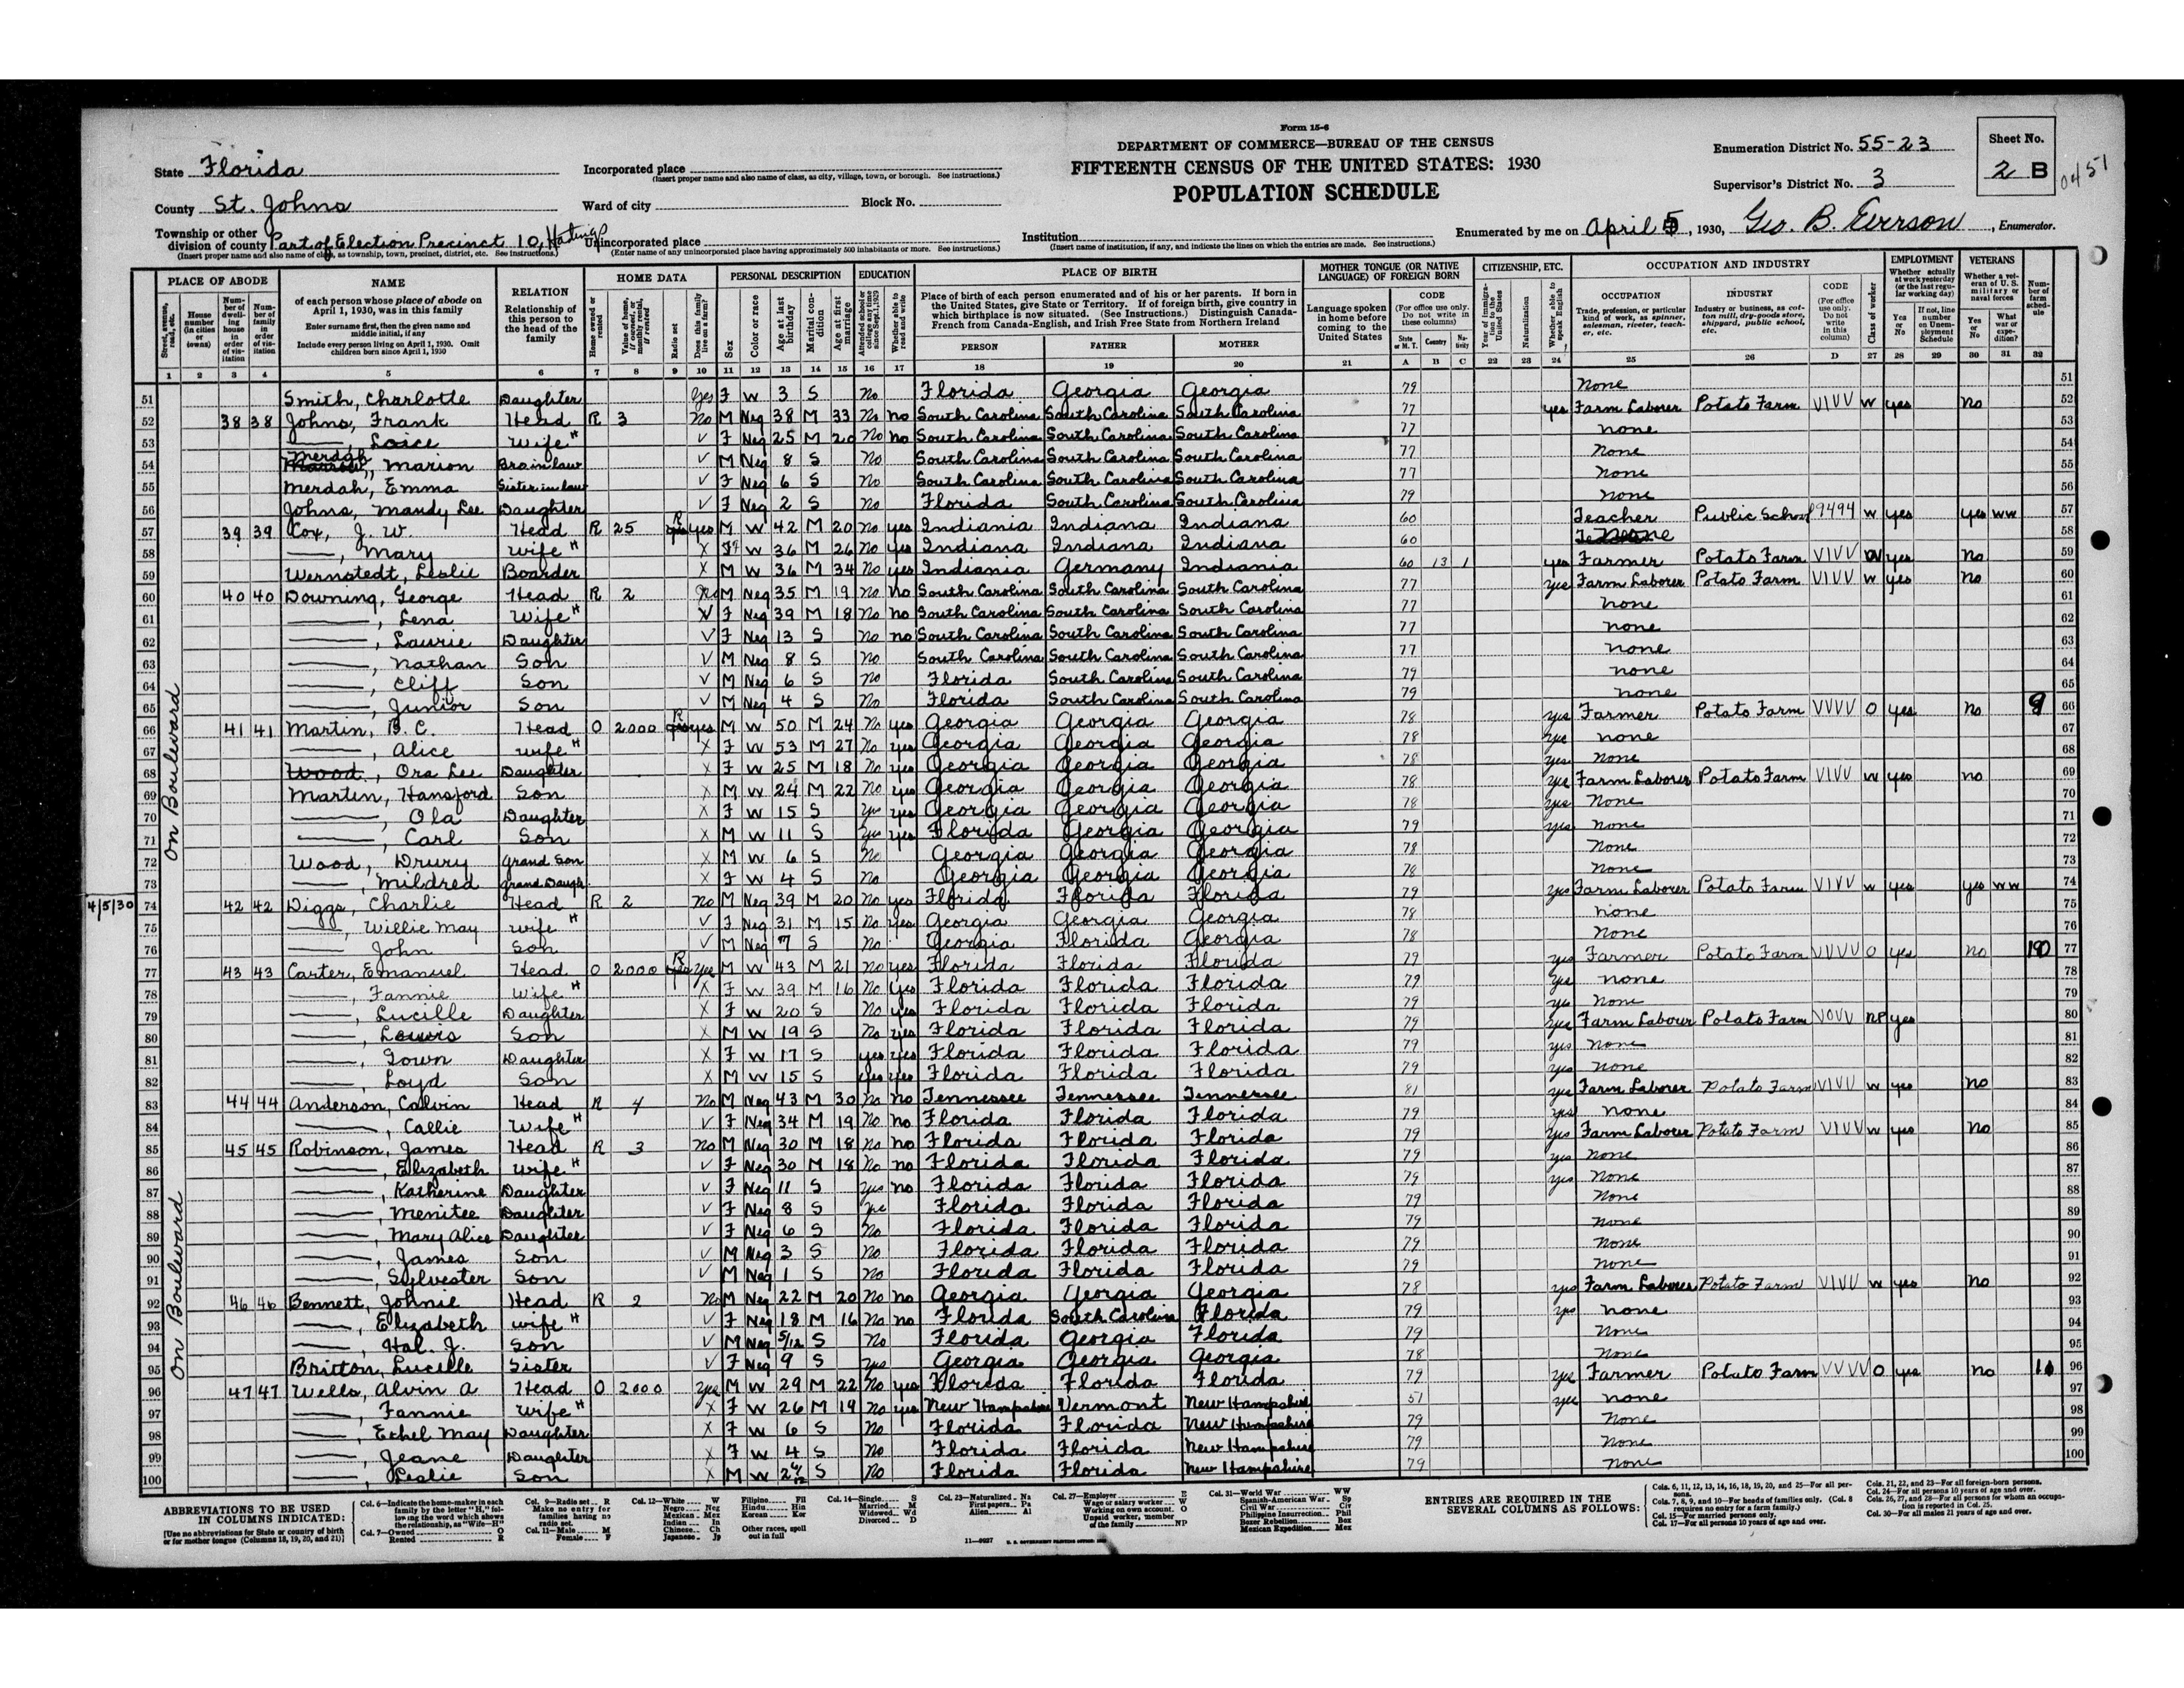 1930 Census